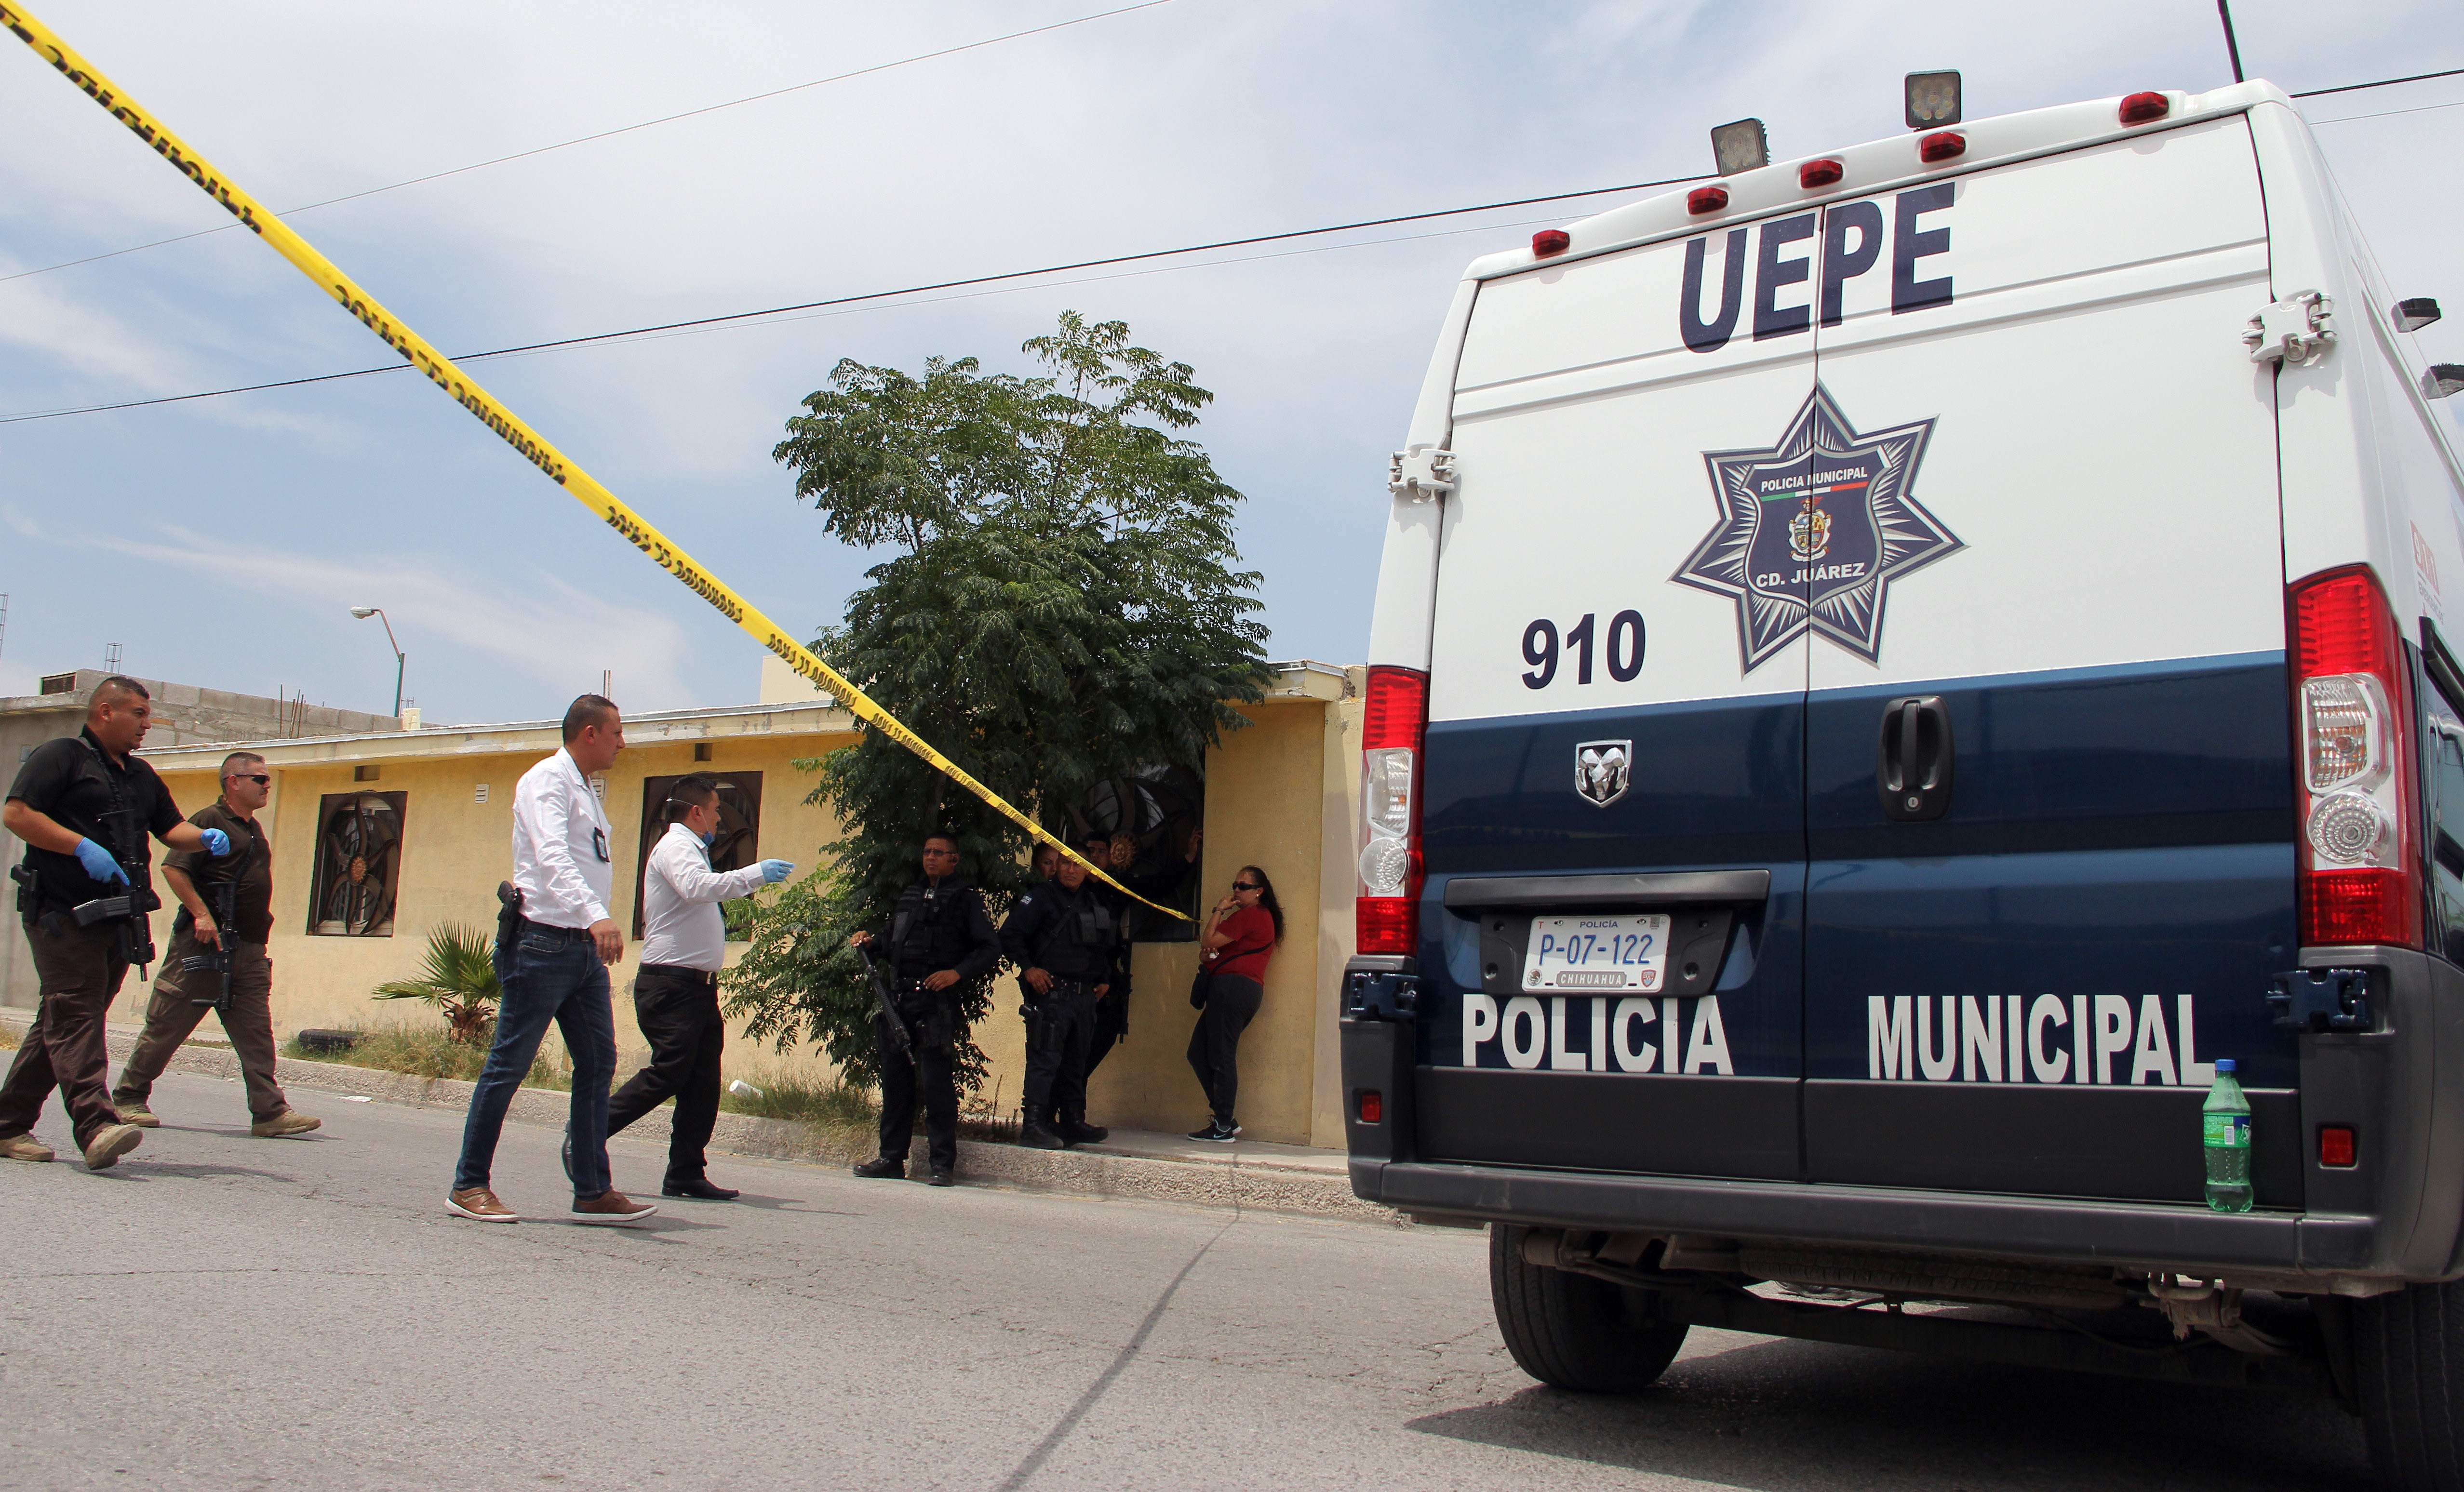  تواجد الشرطة المكسيكية 